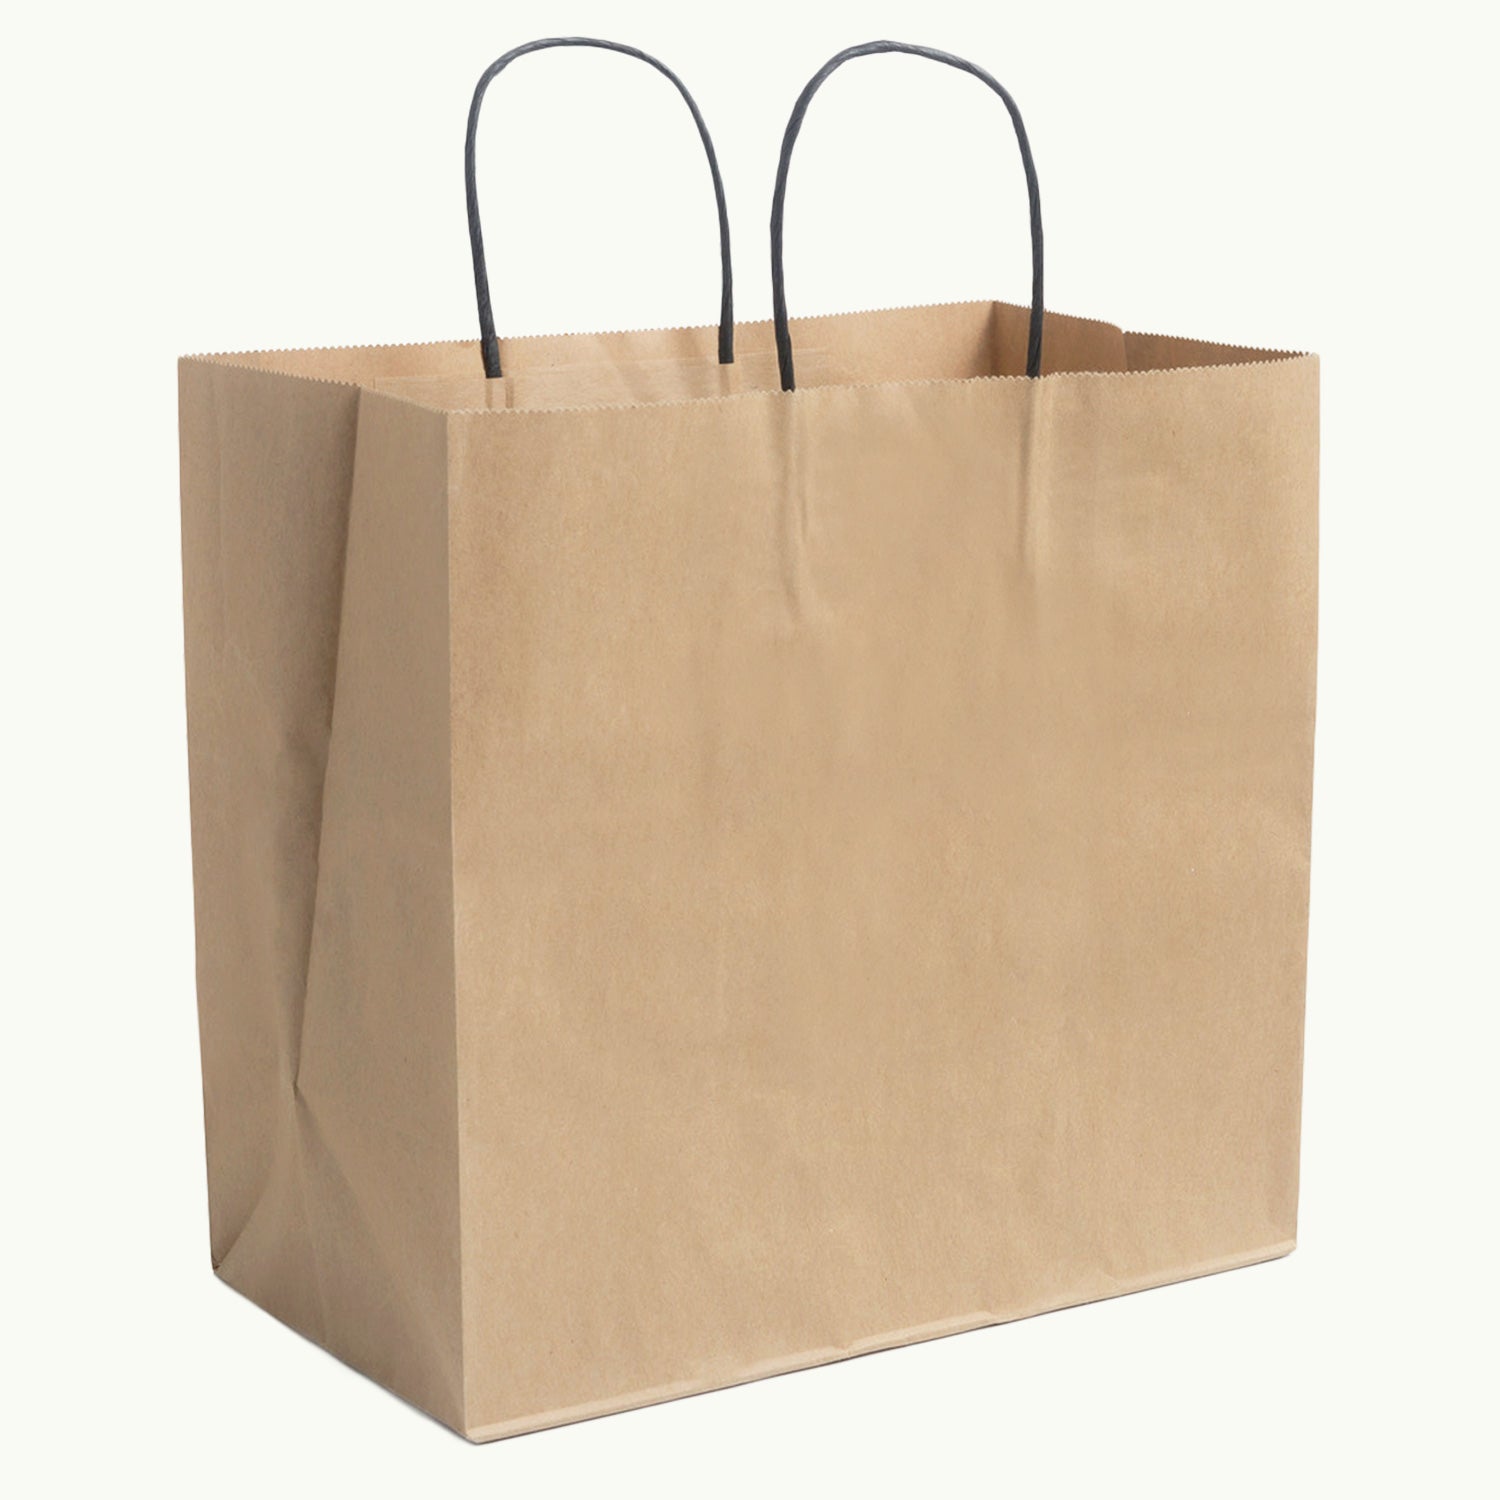 Kraft handle bag. Food delivery service bag,